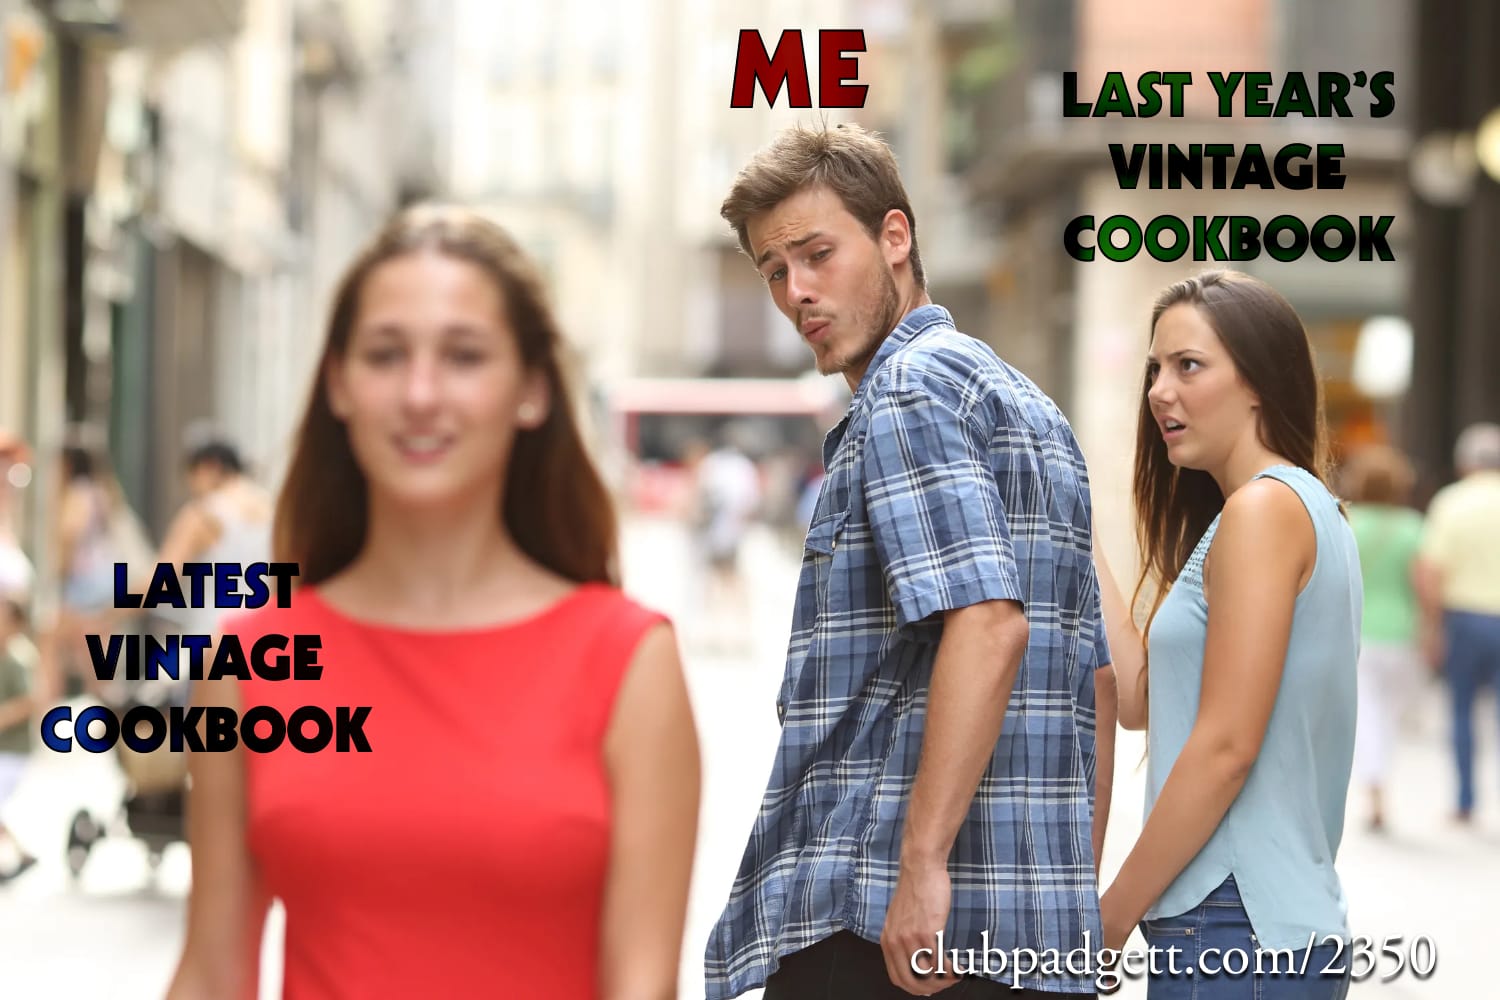 Distracted vintage chef: Last year’s vintage cookbook jealous of this year’s.; cookbooks; memes; food history; vintage cookbooks